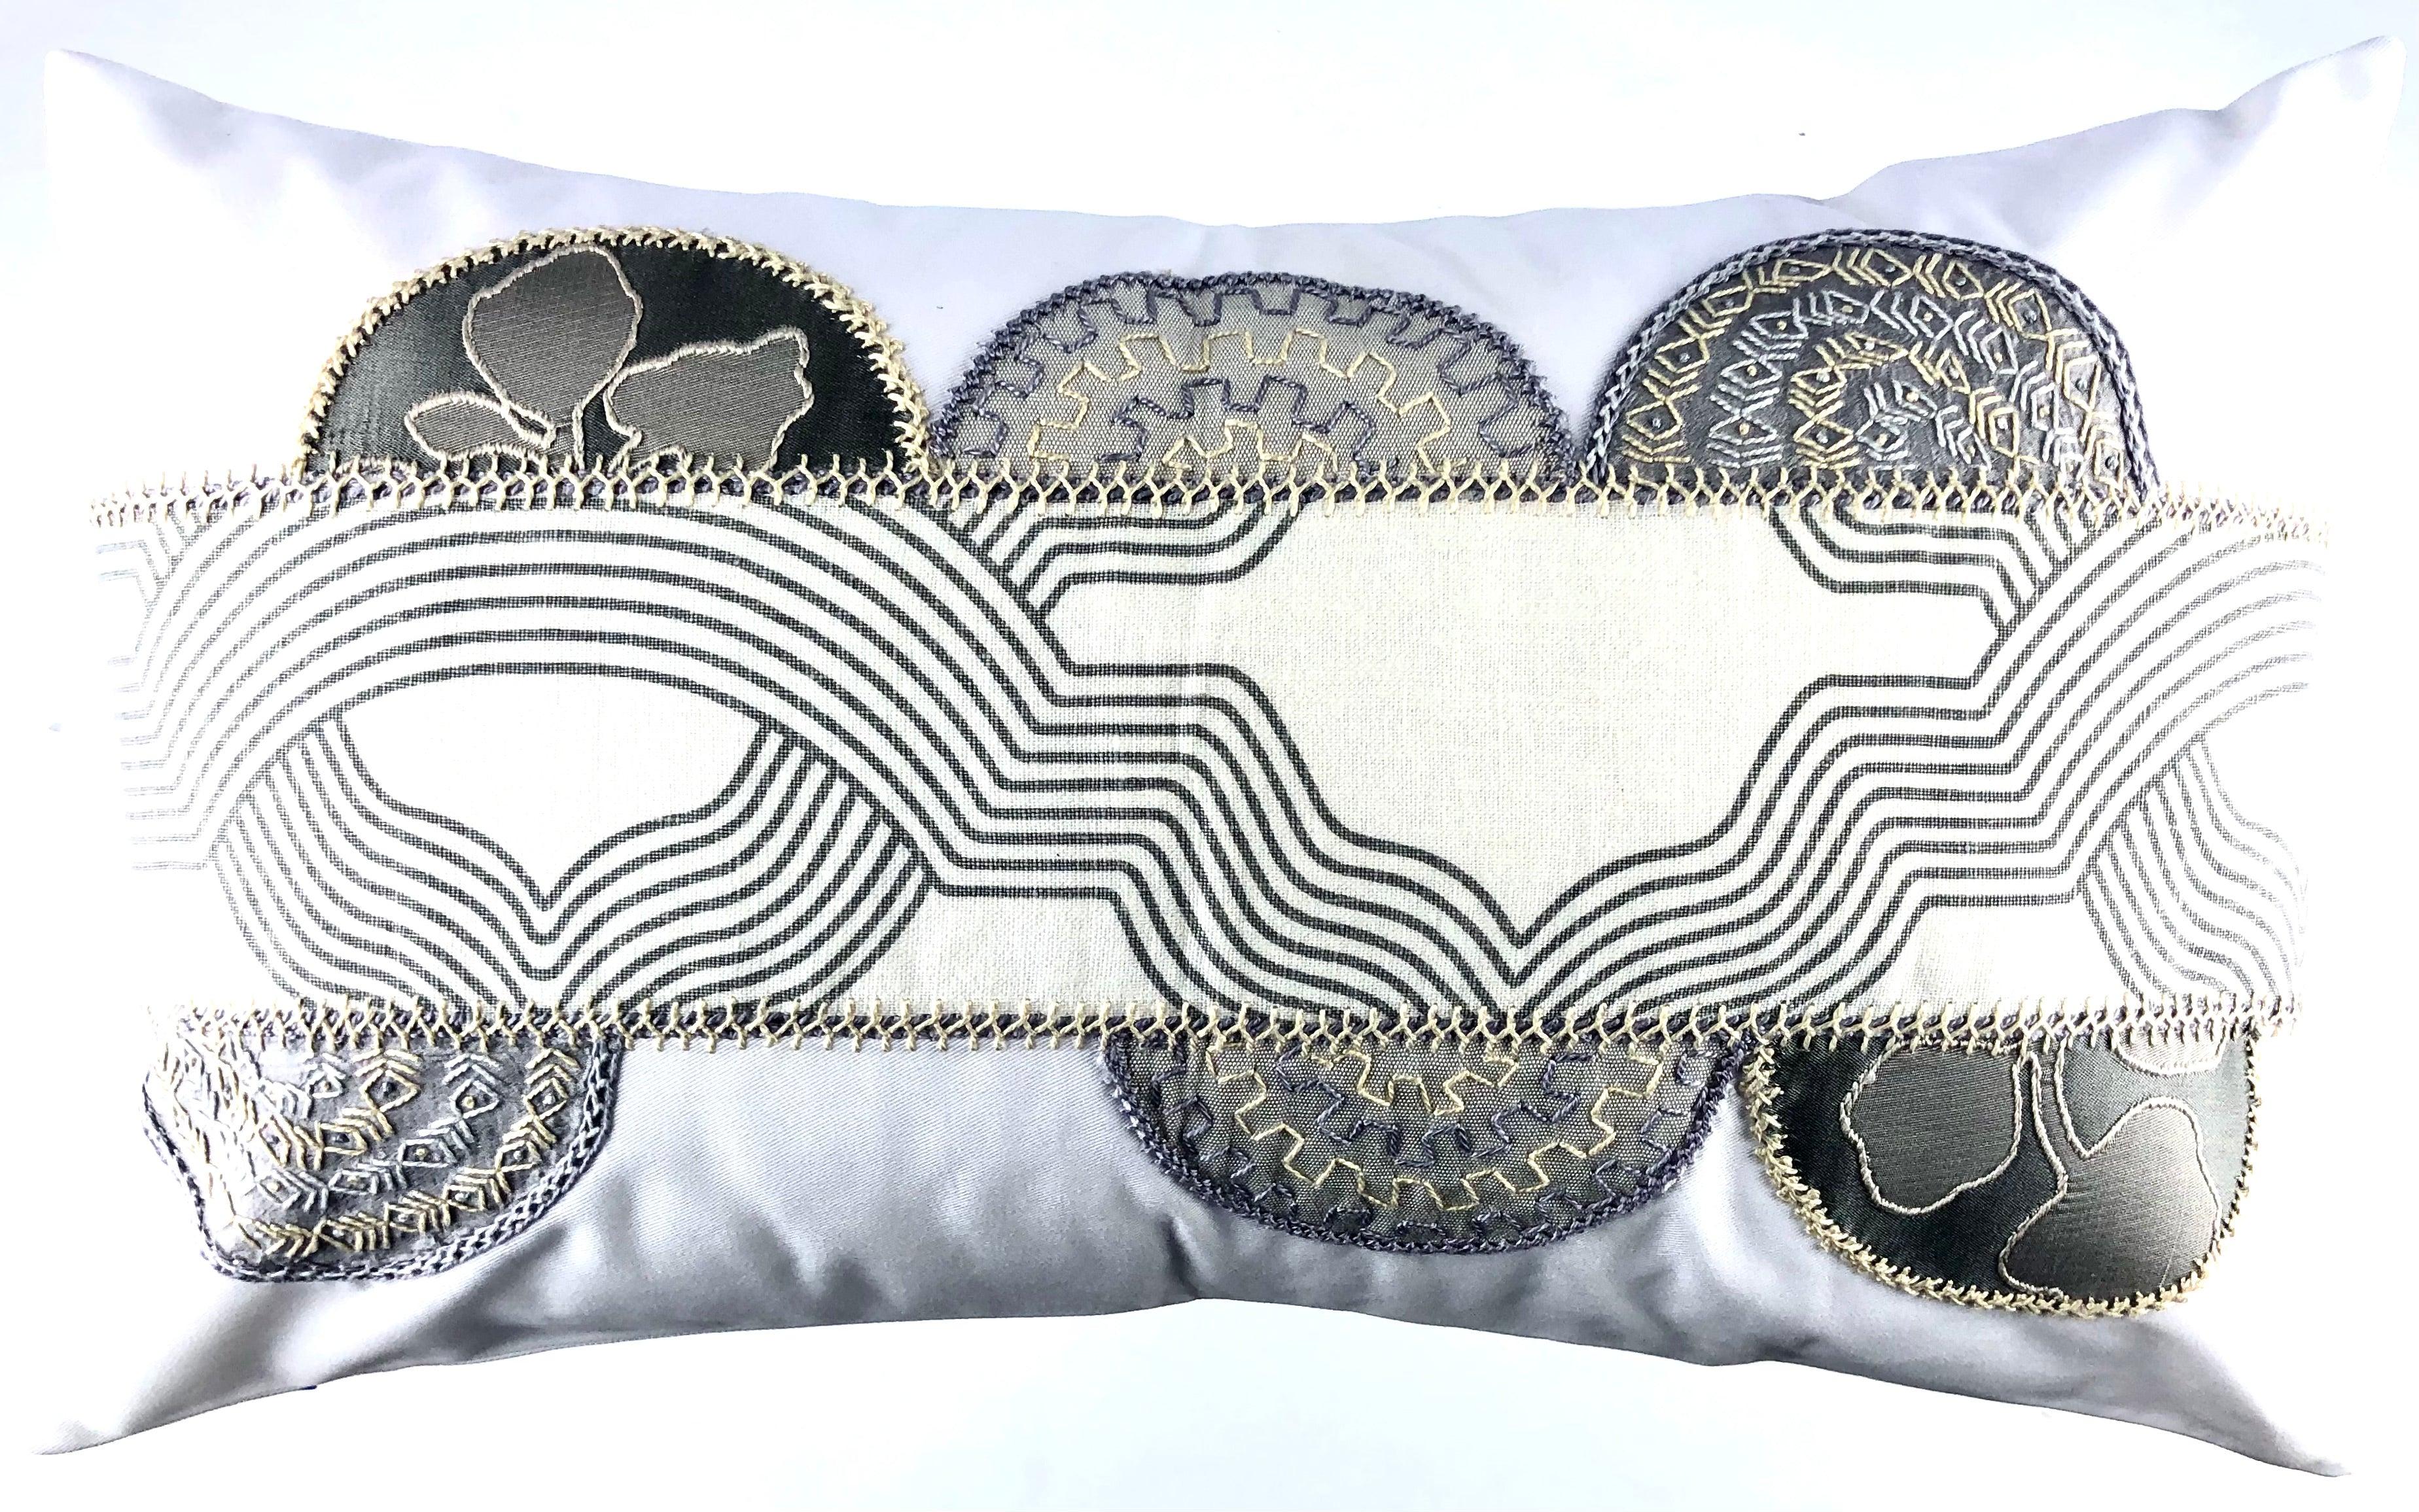 Piedras Lunar Design Embroidered Pillow on white Honduras Threads